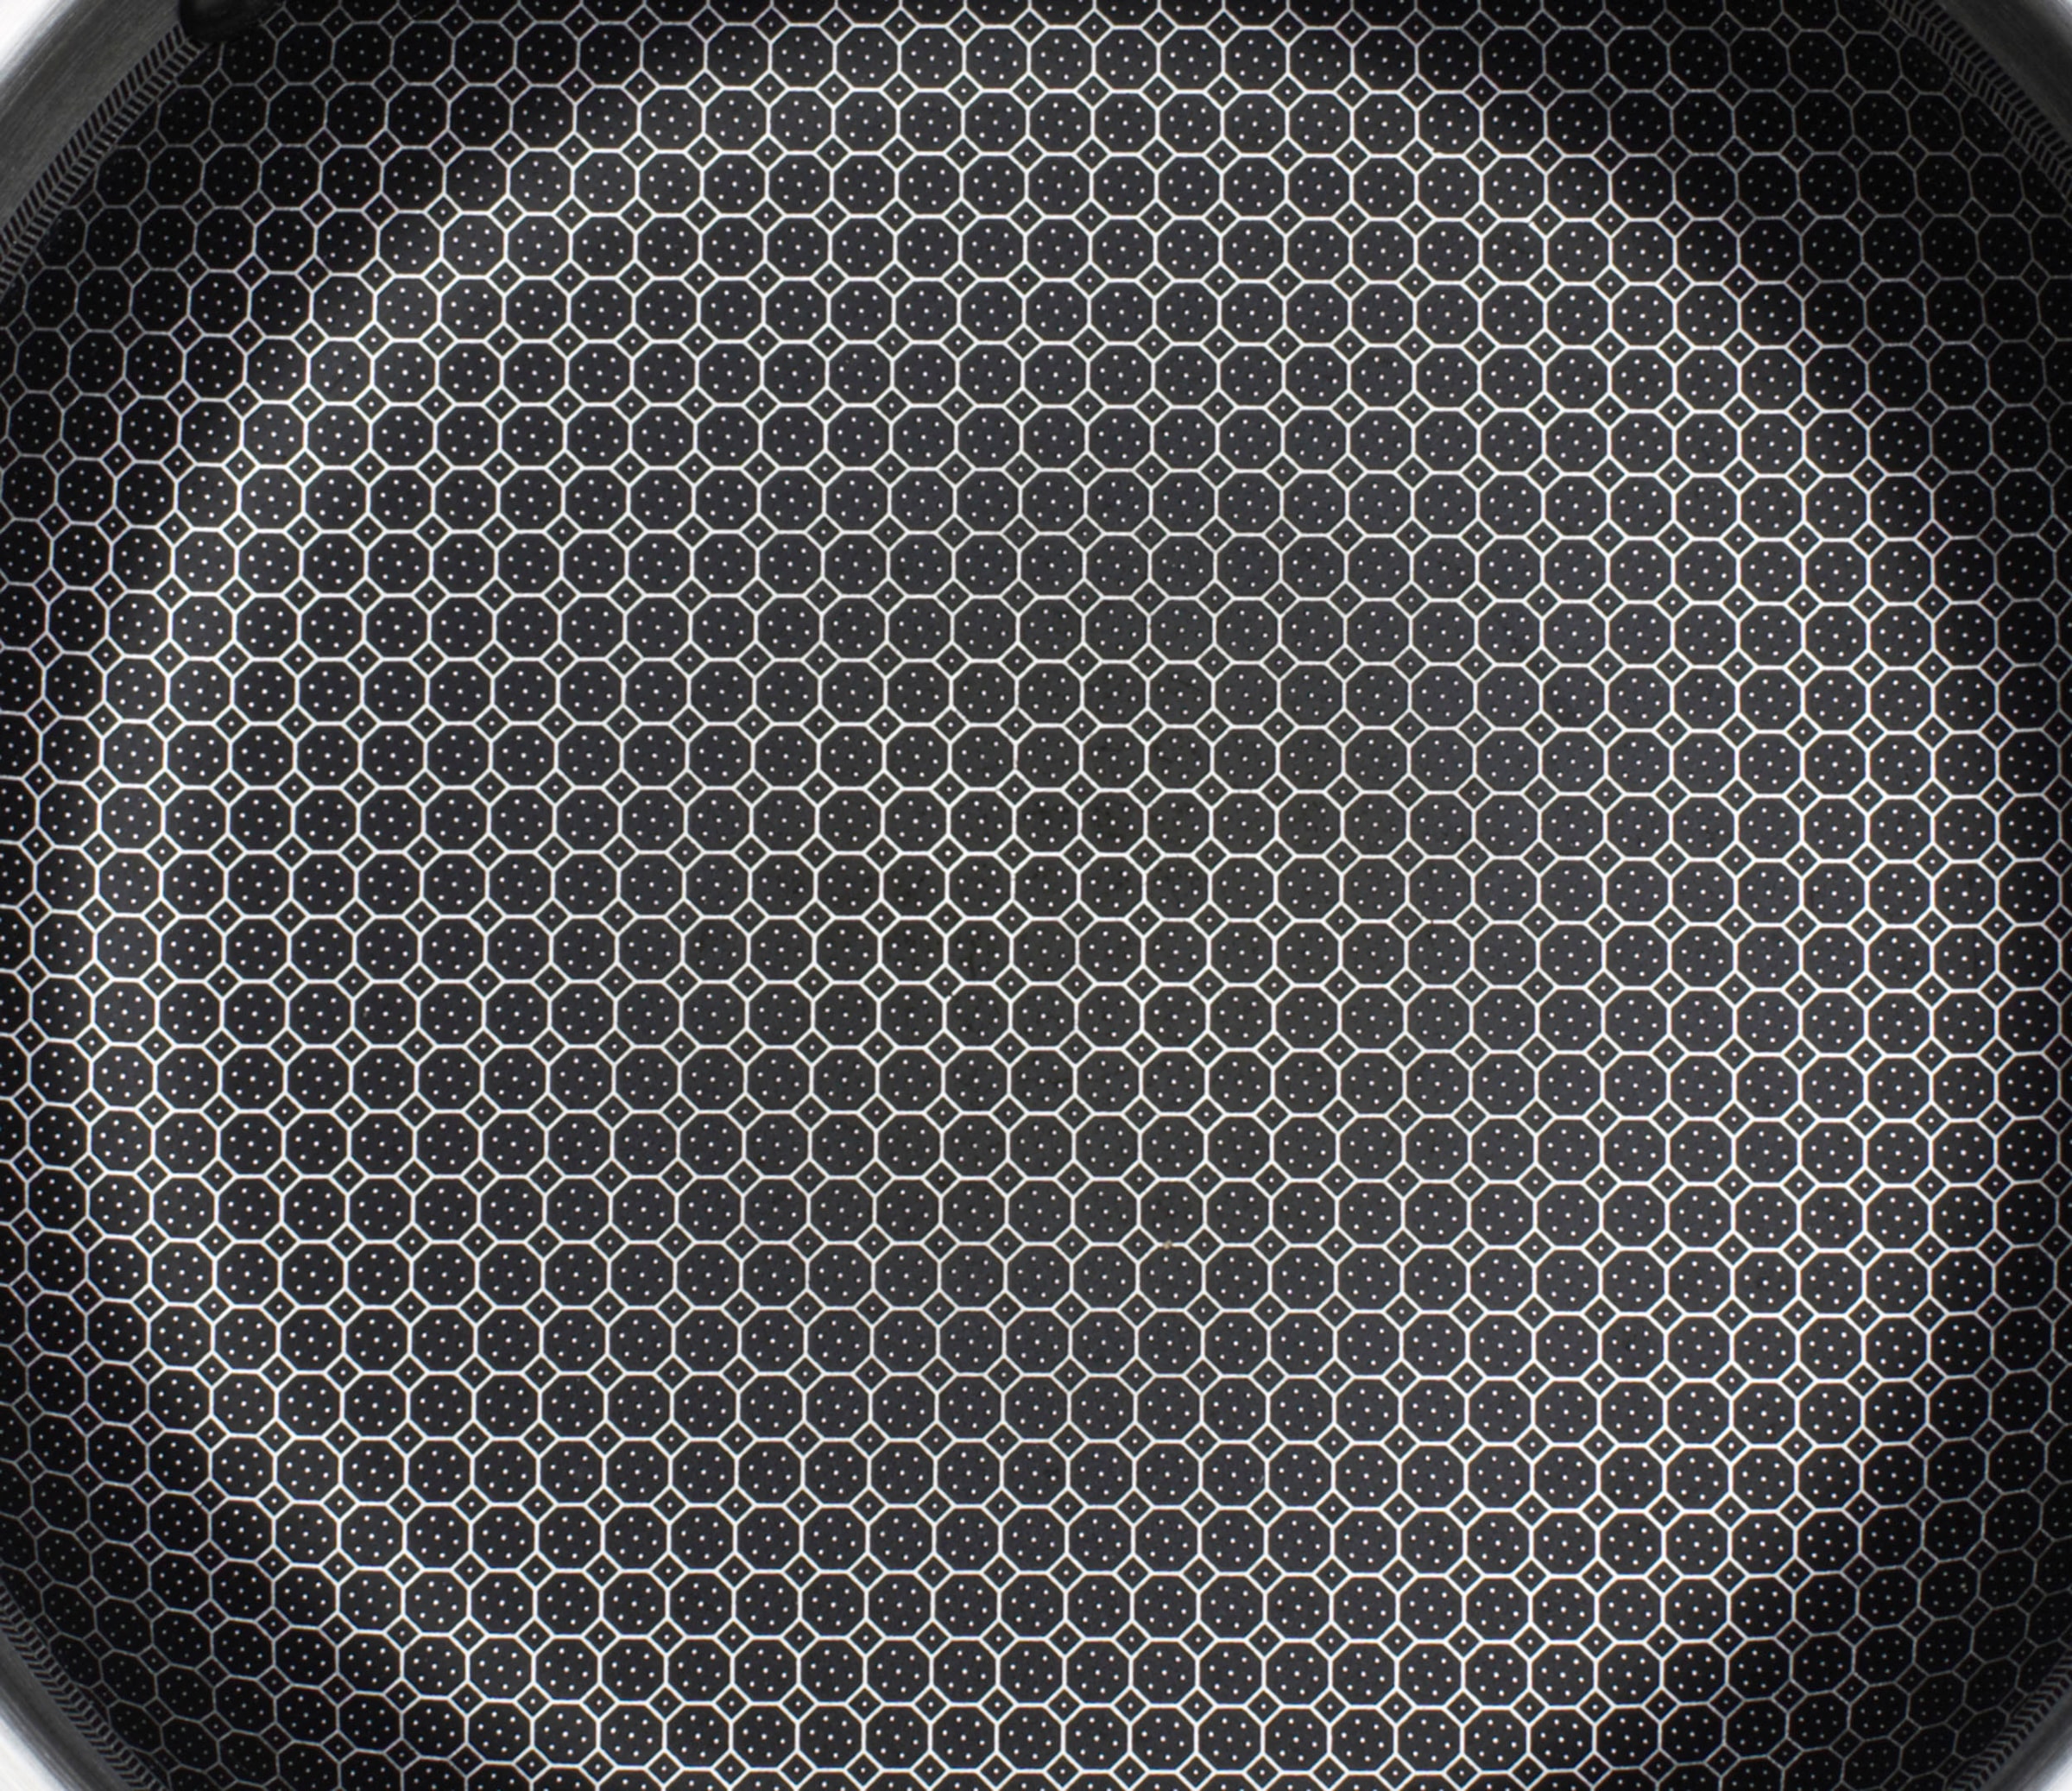 GSW Schmorpfanne »Inoxxa Black Ø 28 cm«, Edelstahl, Dreischicht-Material, Antihaft-Versiegelung, Wabenstruktur, Induktion